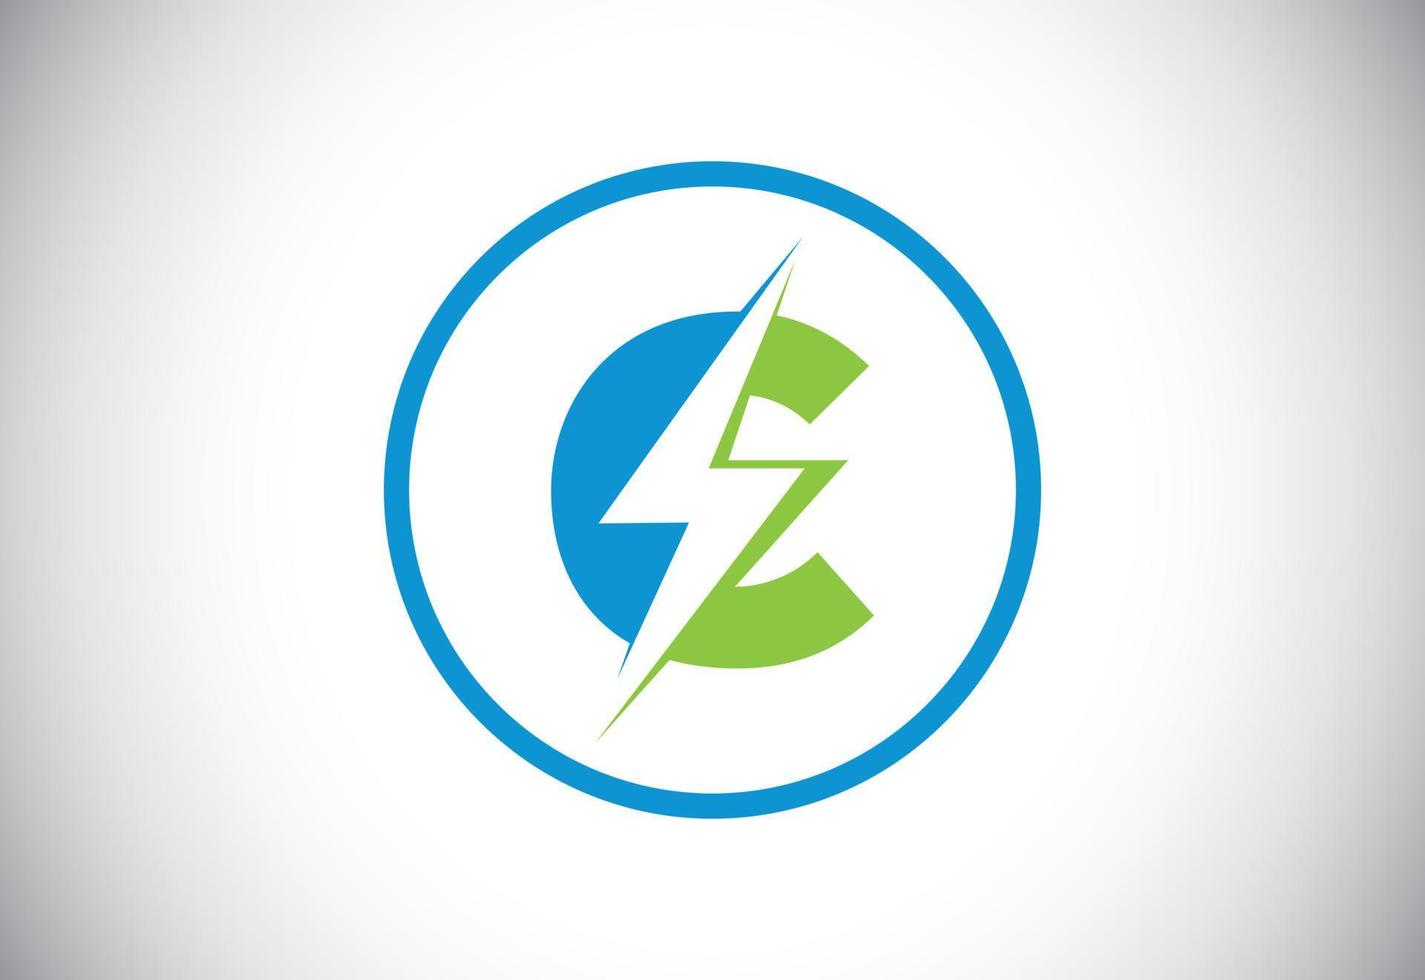 Logo-Design mit anfänglichem c-Buchstaben und Blitz. Logo-Vektor für elektrische Bolzenbuchstaben vektor